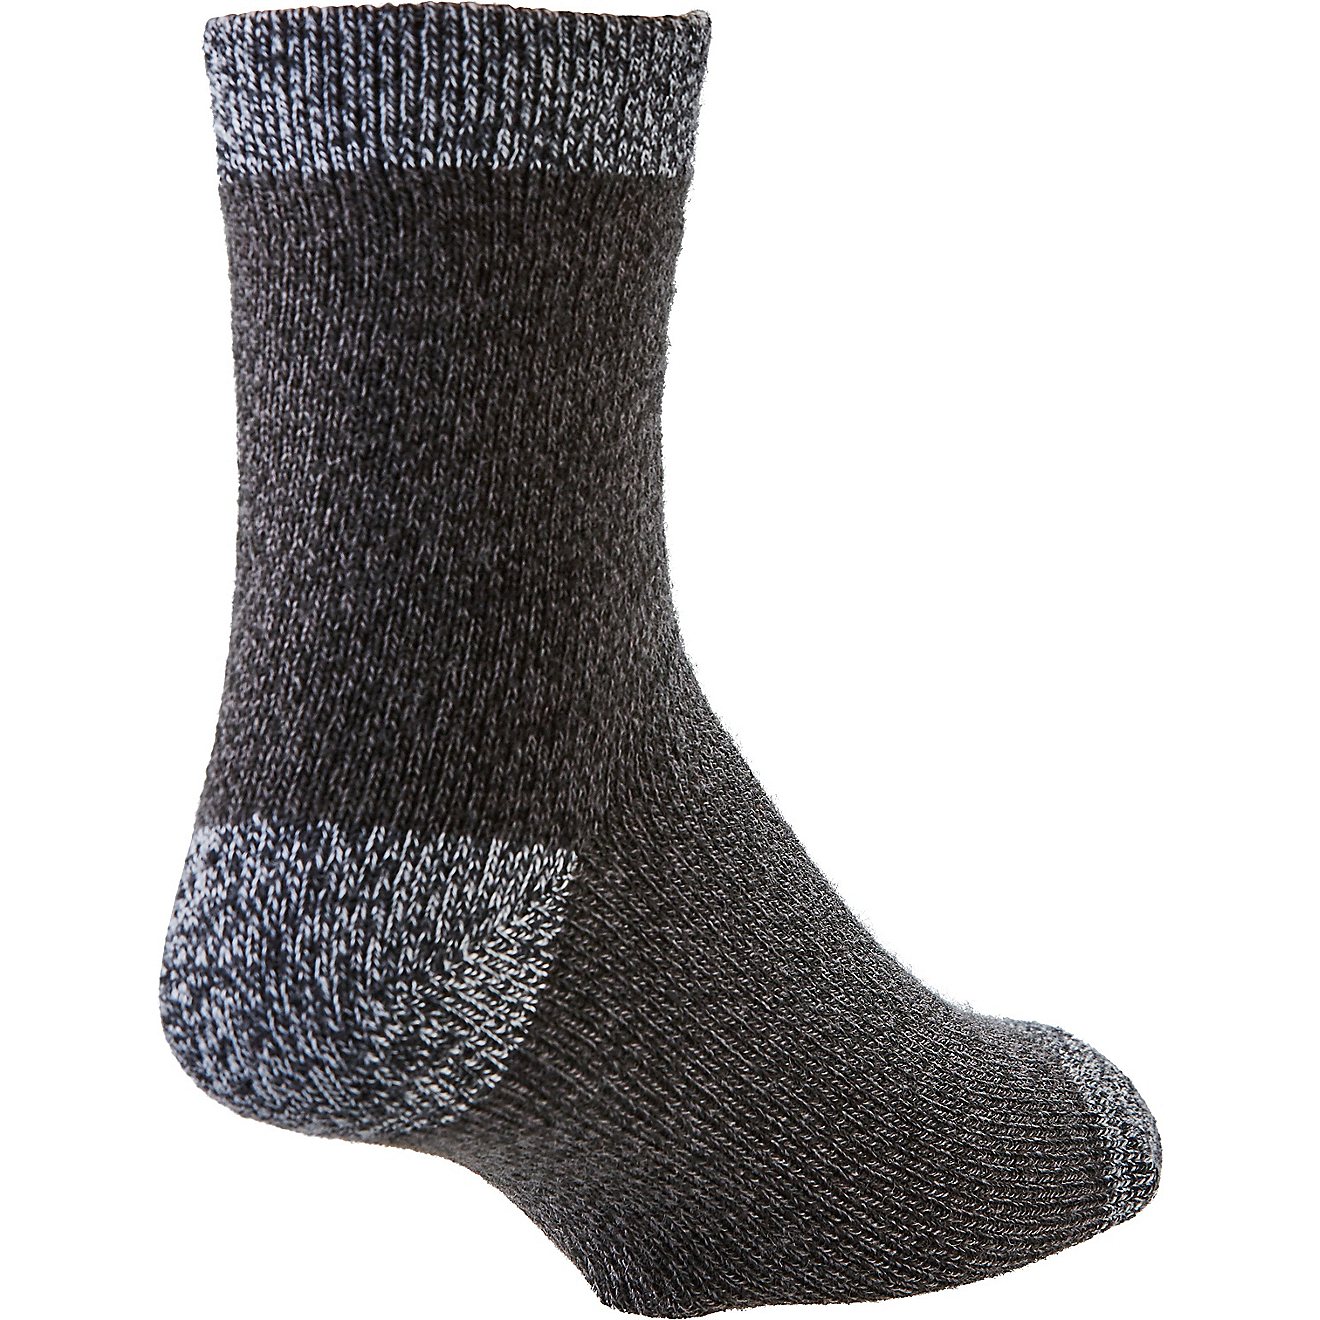 Magellan Outdoors Heel Toe Marl Contrast Lodge Socks                                                                             - view number 2